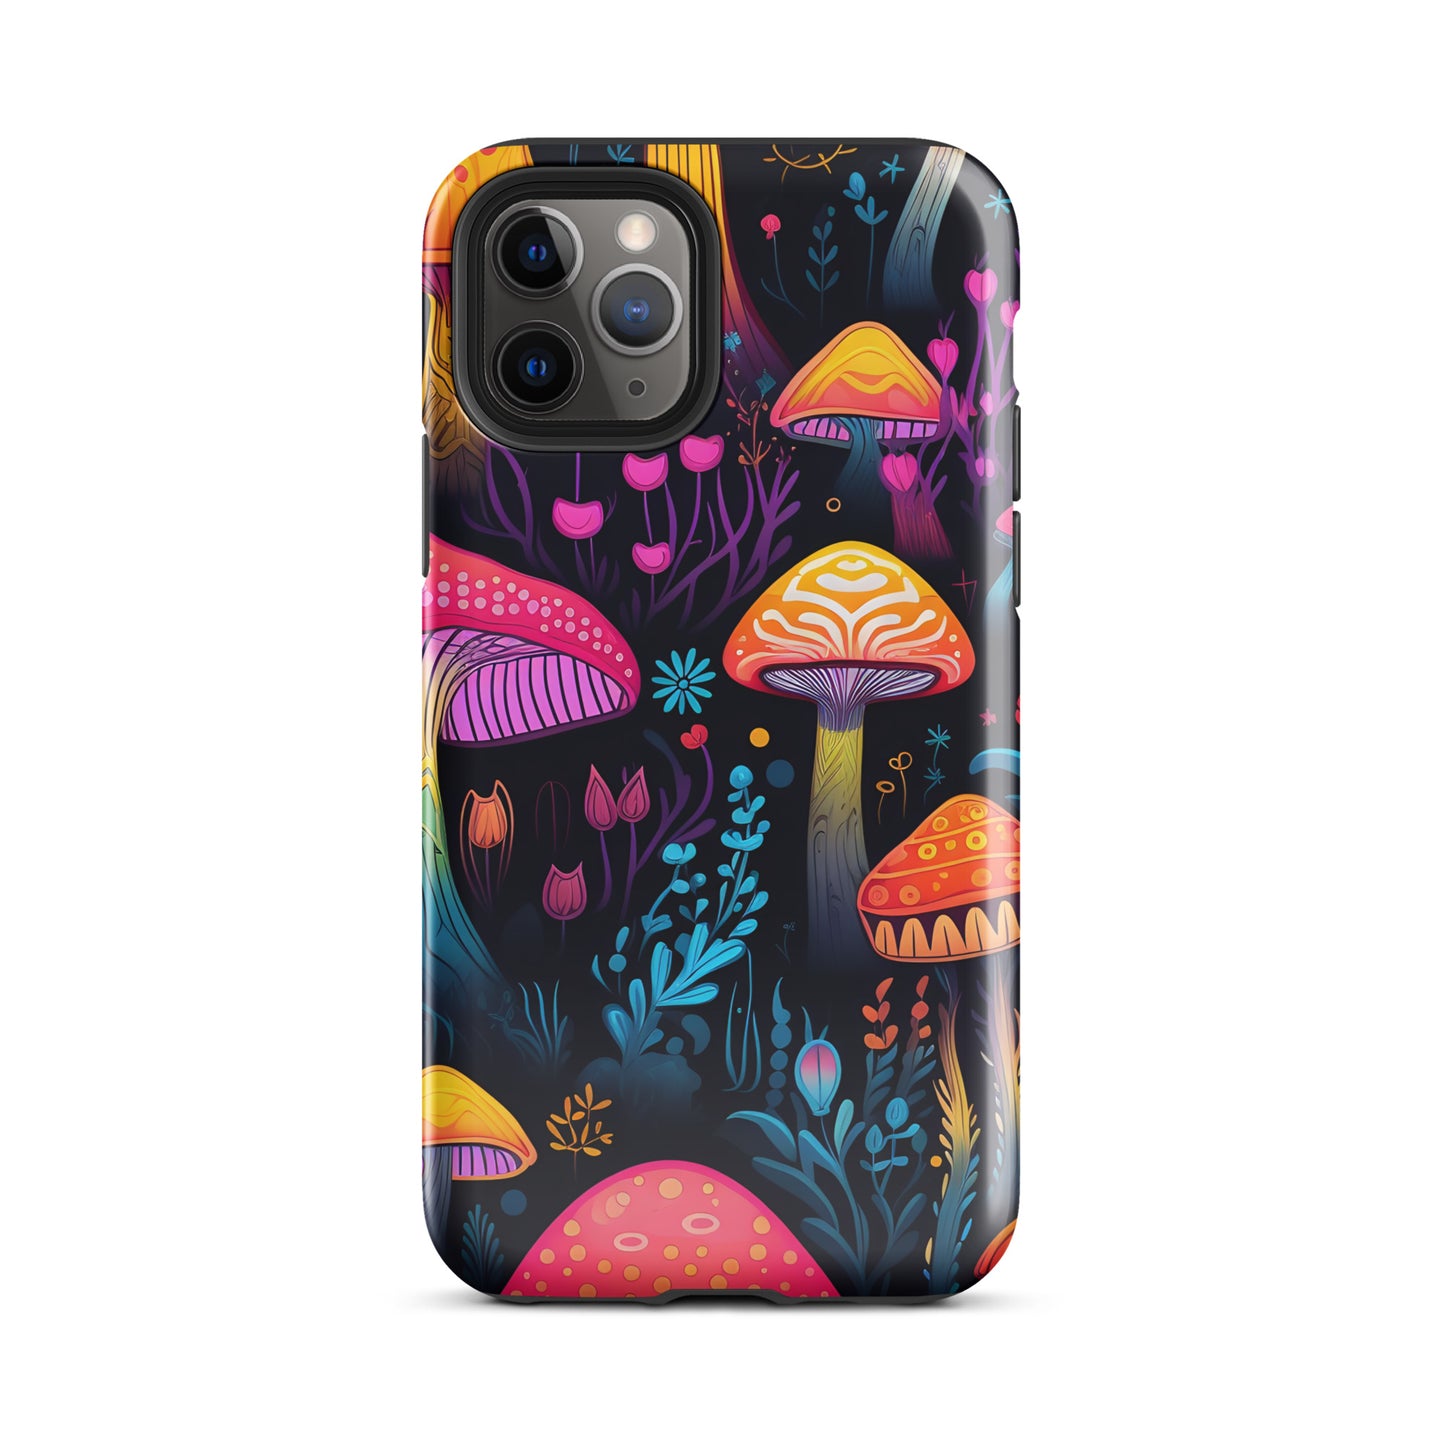 Neon Magic Mushroom Tough Case for iPhone®